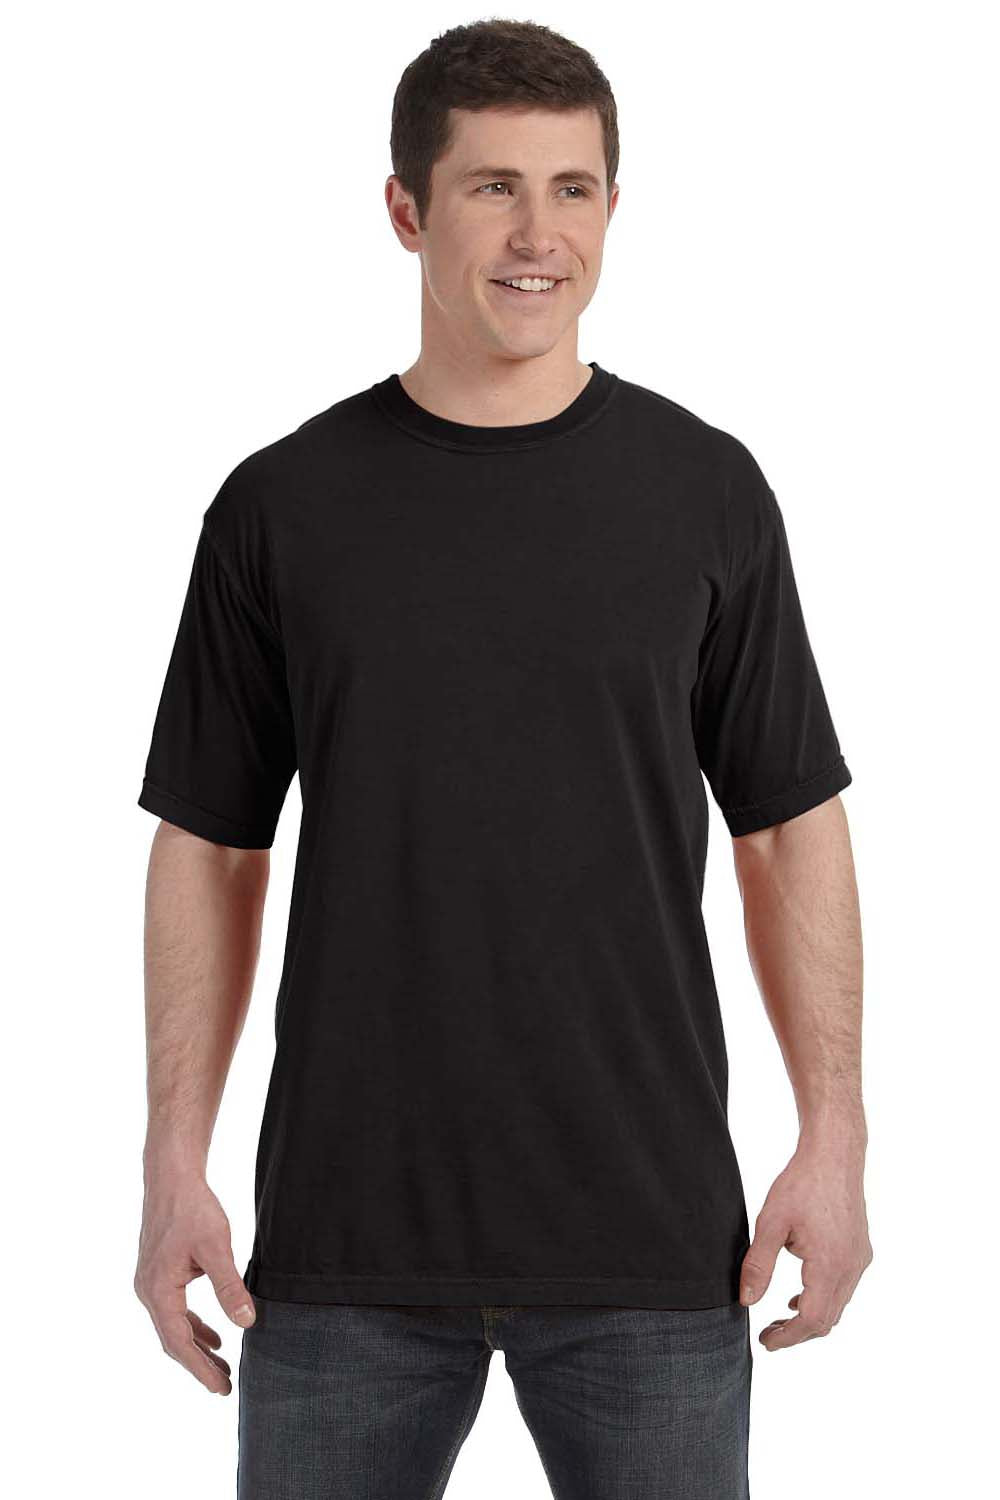 Comfort Colors C4017 Mens Short Sleeve Crewneck T-Shirt Black Front